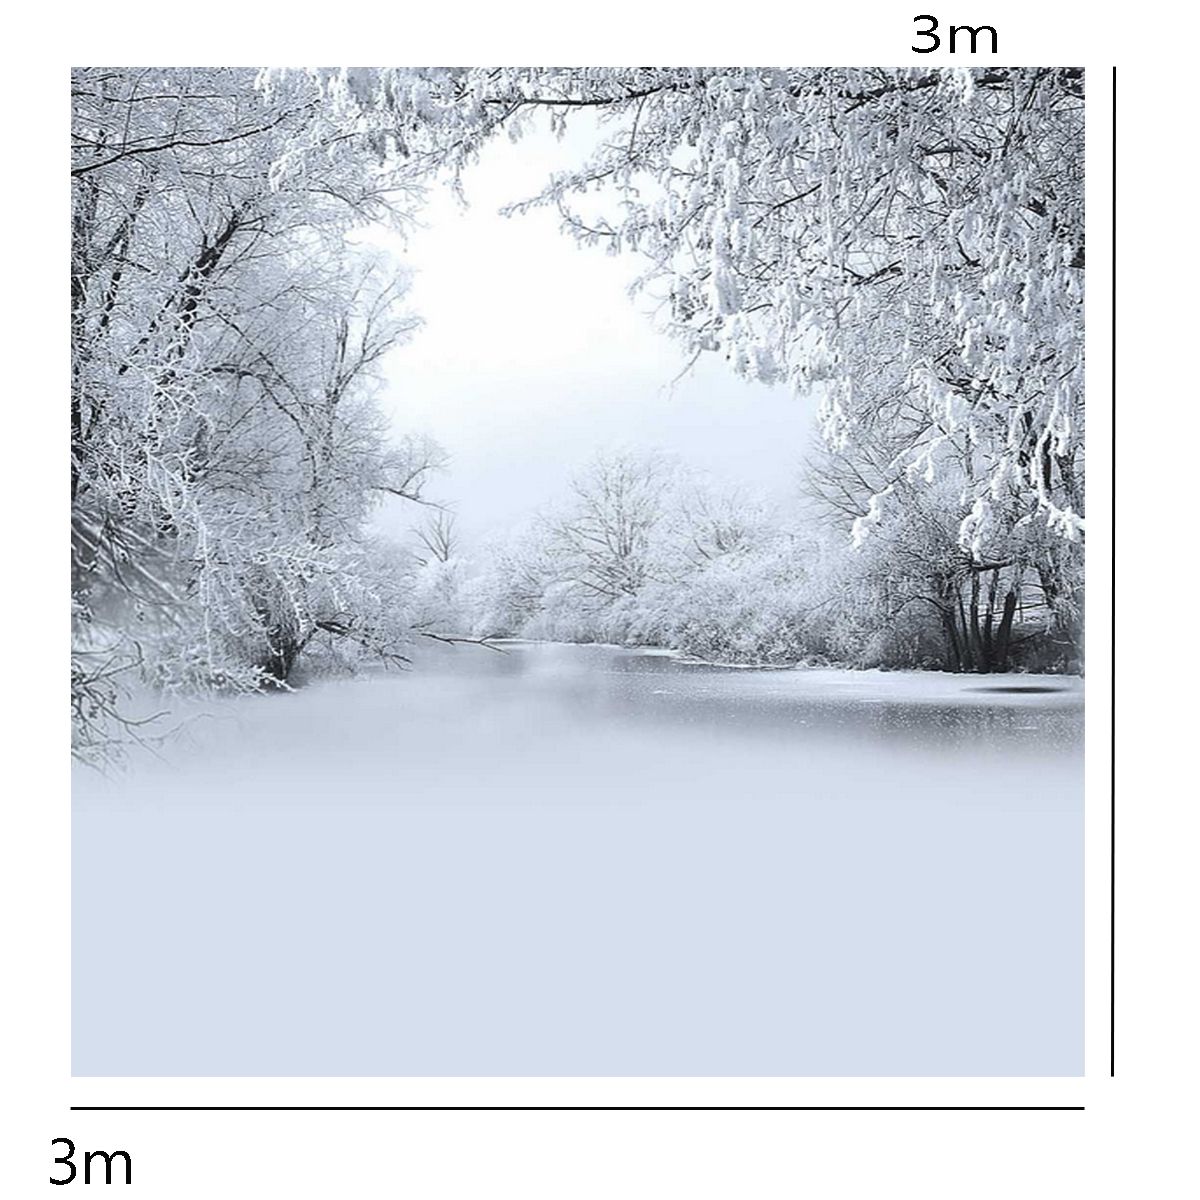 10x10FT-Winter-Ice-Snow-Tree-Photography-Vinyl-Background-Studio-Backdrop-1238301